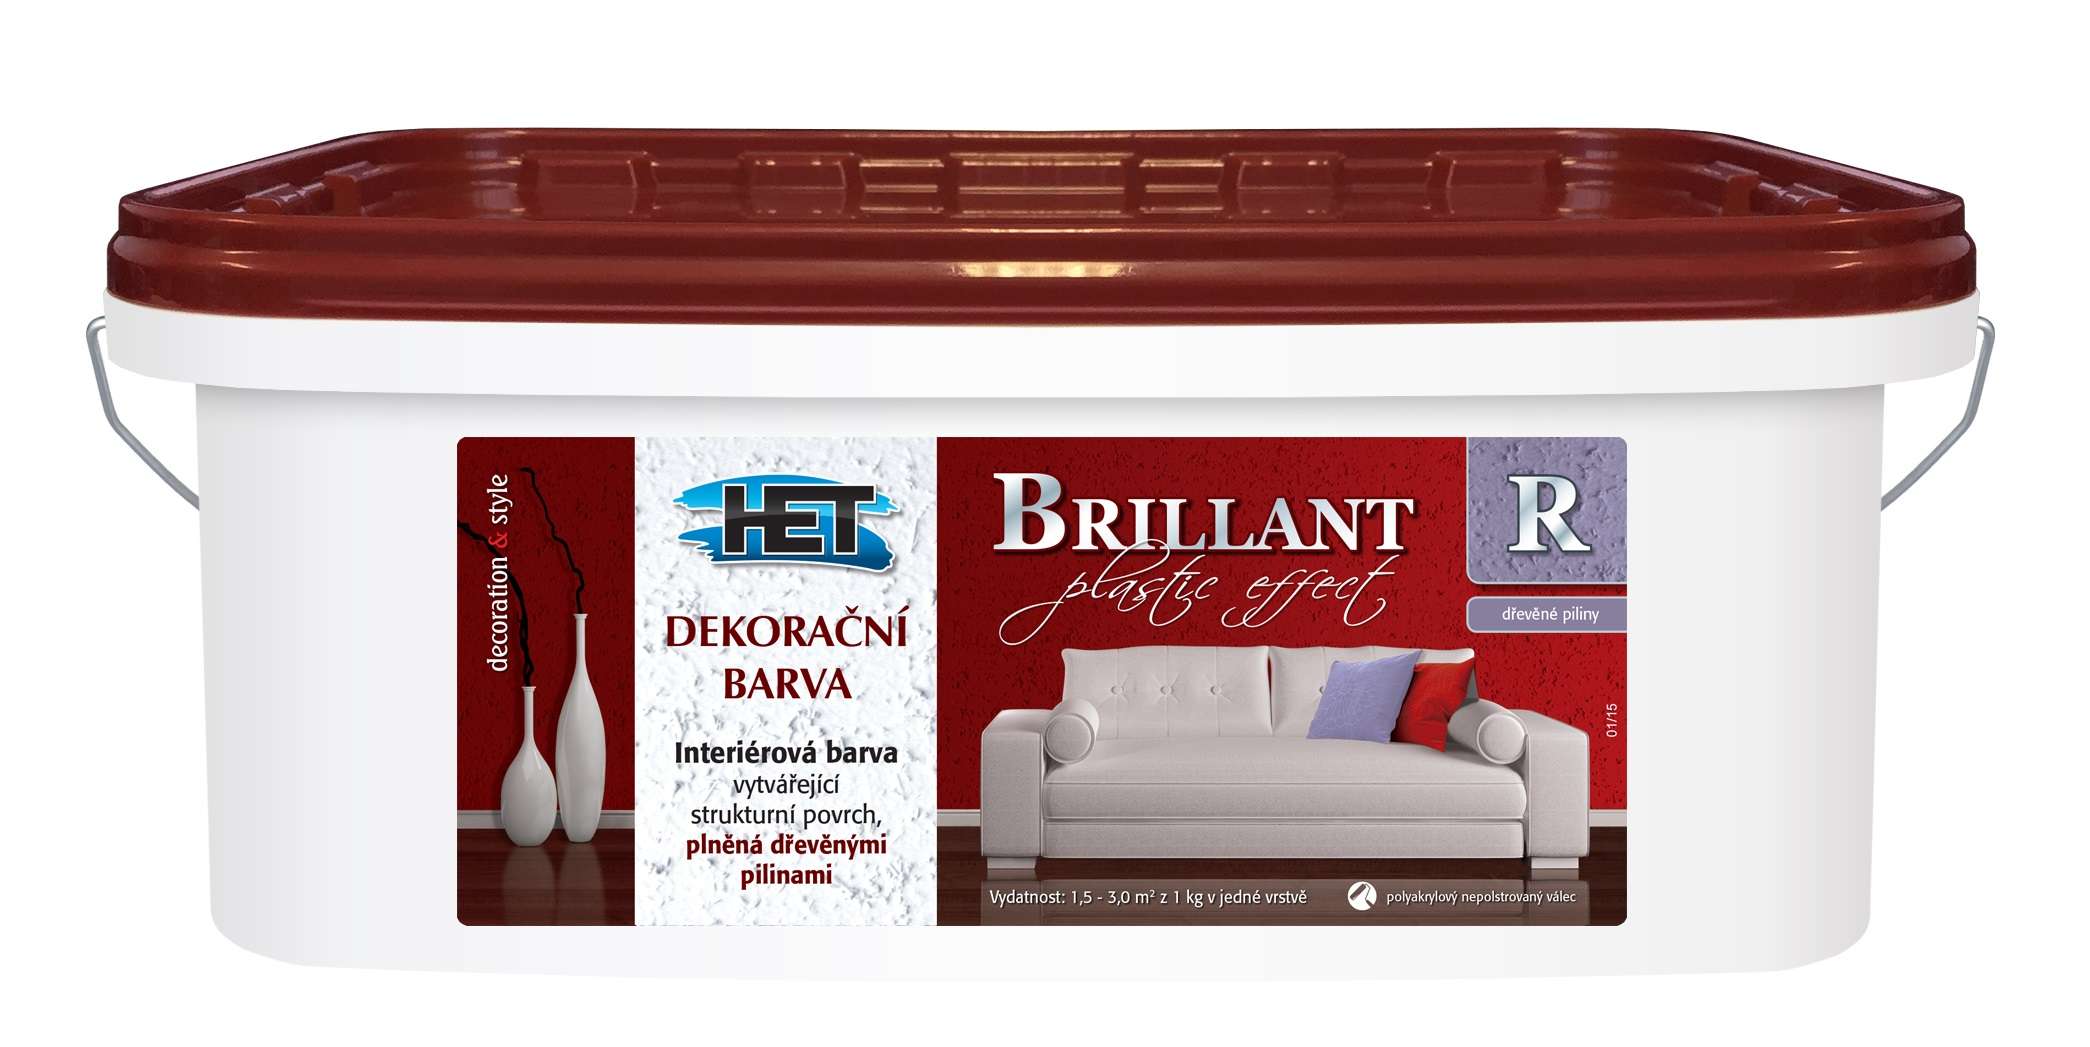 Het Brillant R * dekorační barva plněná dřevěnými pilinami 1